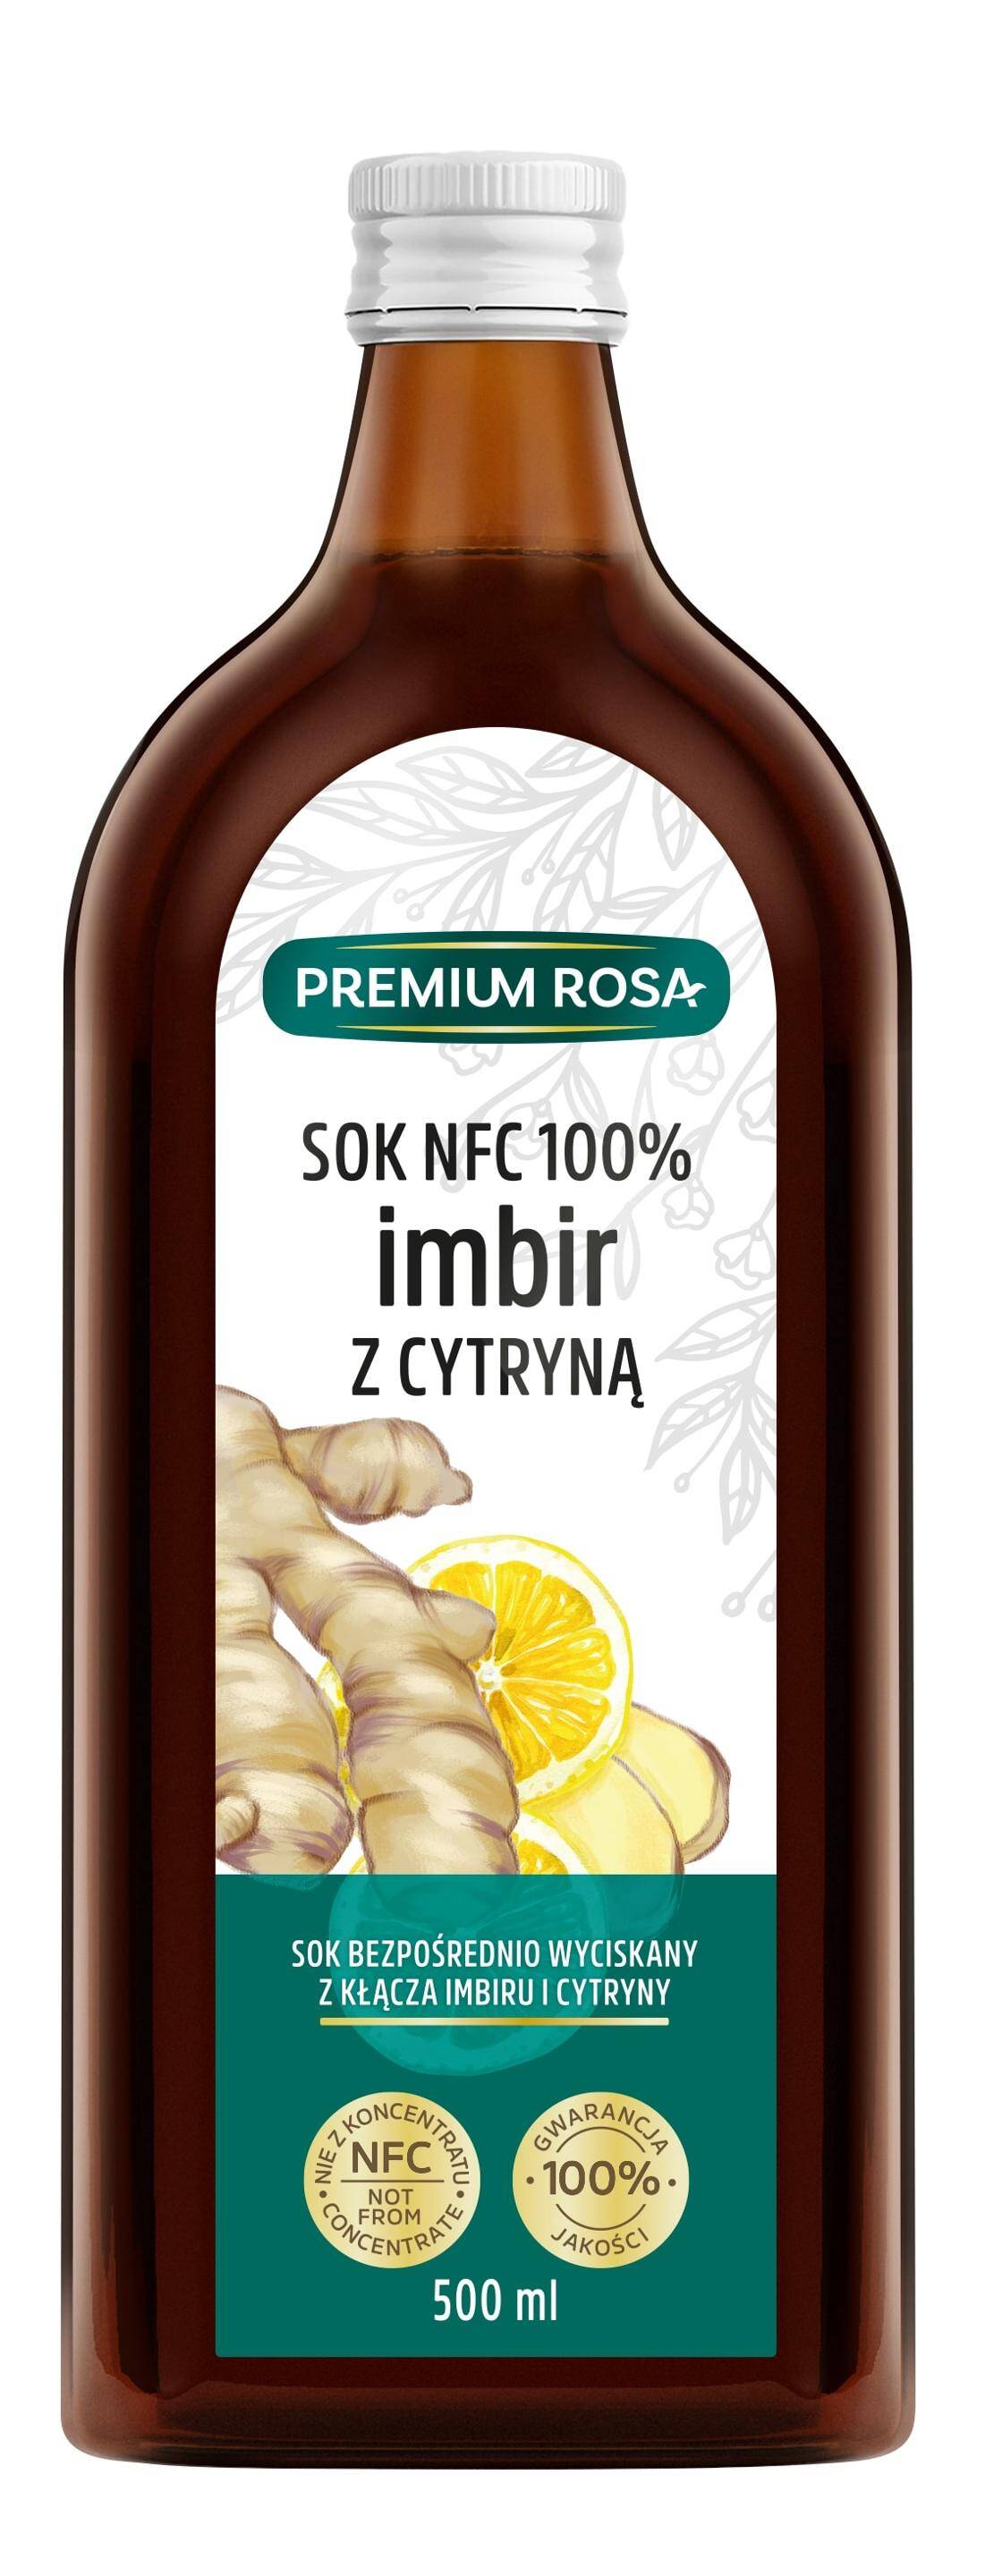 Premium Rosa Sok z imbirem i cytryną (Zdjęcie 1)